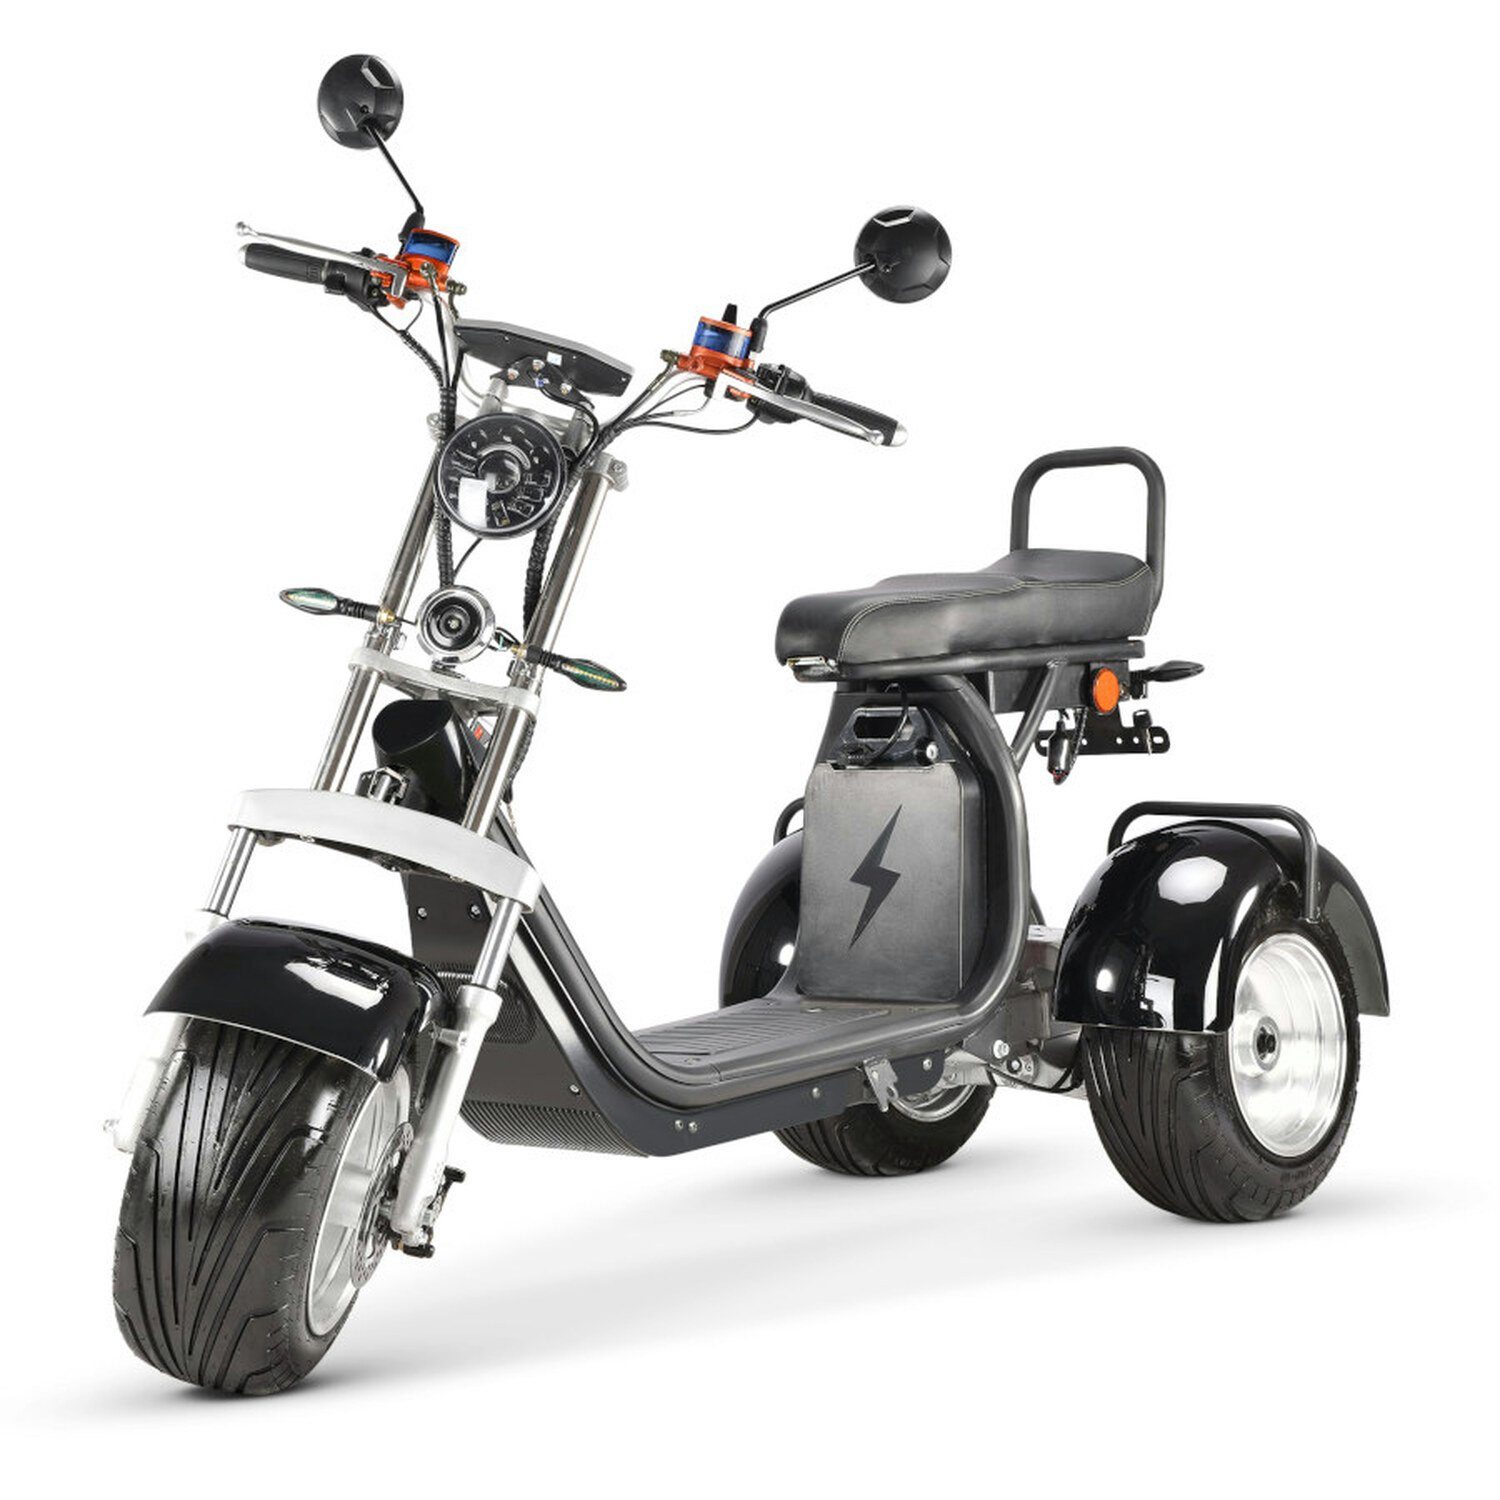 TPFLiving E-Scooter Coco Bike Fat Trike - Elektroroller -Akku: 1 x 60 Volt/20Ah, 35 km/h, Roller elektro ab 14 Jahren mit Scheibenbremsen - Farbe: schwarz